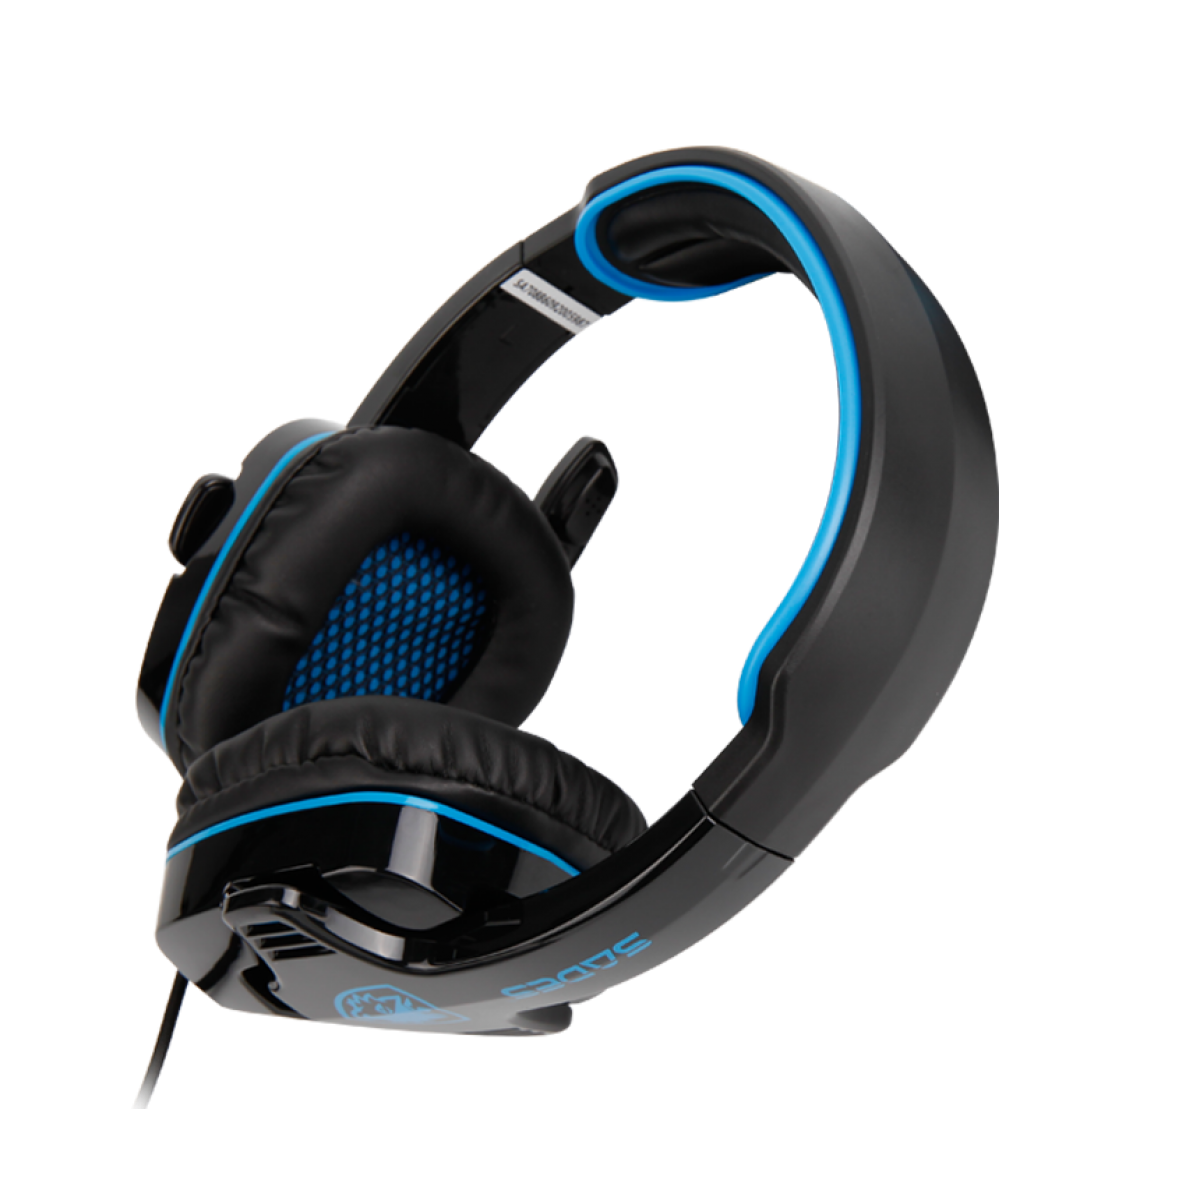 Headset Gamer Sades Sa-708 Gpower, Stereo, Black/Blue, SA-708